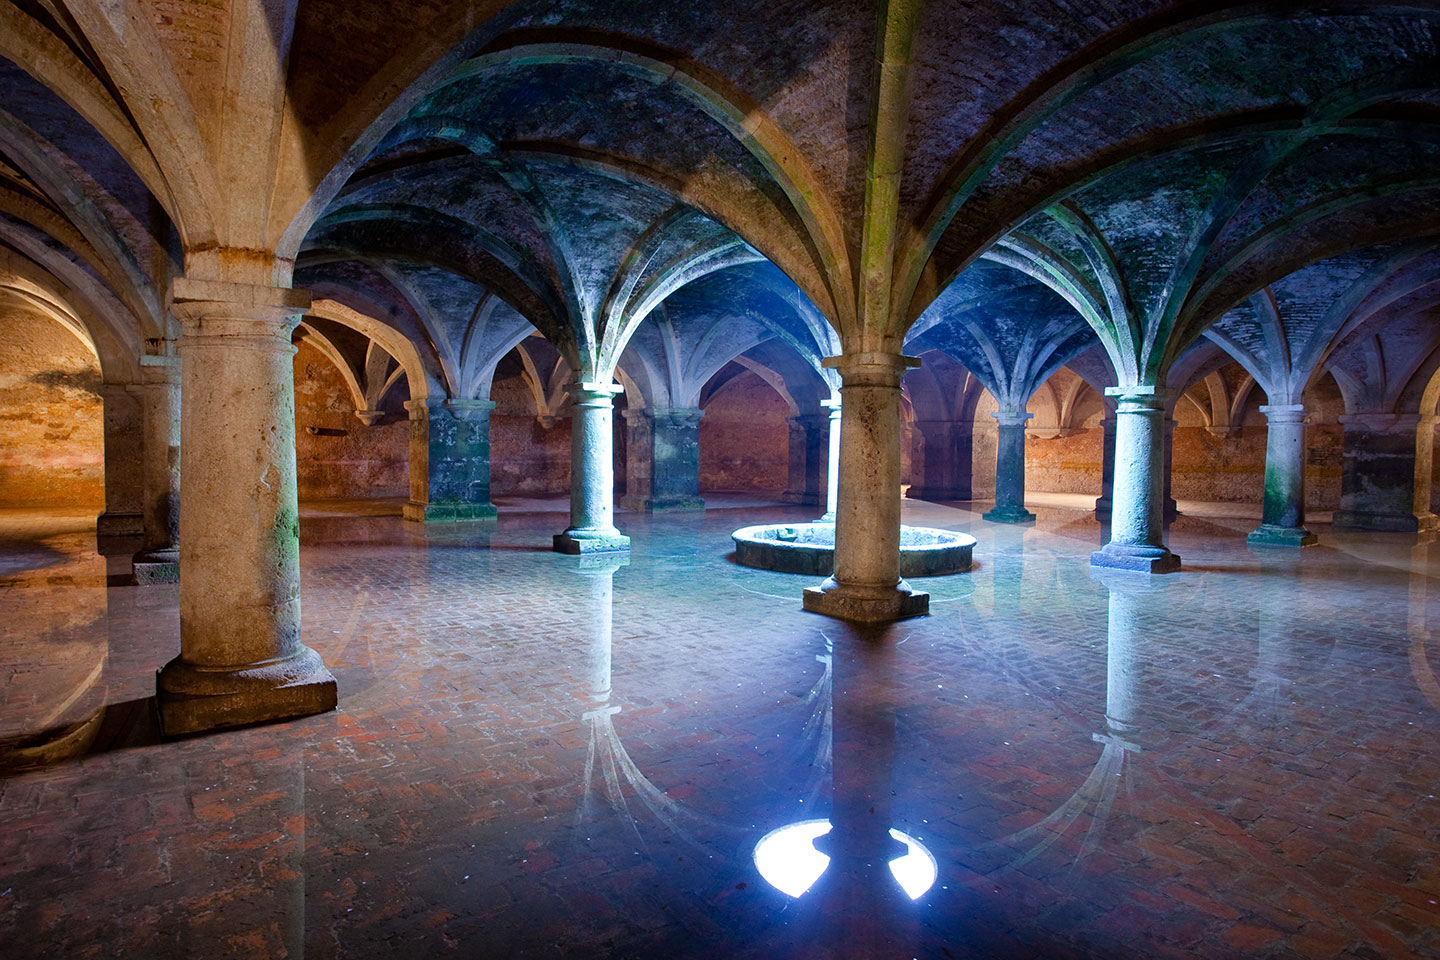 Portuguese cistern of El Jadida, Morocco